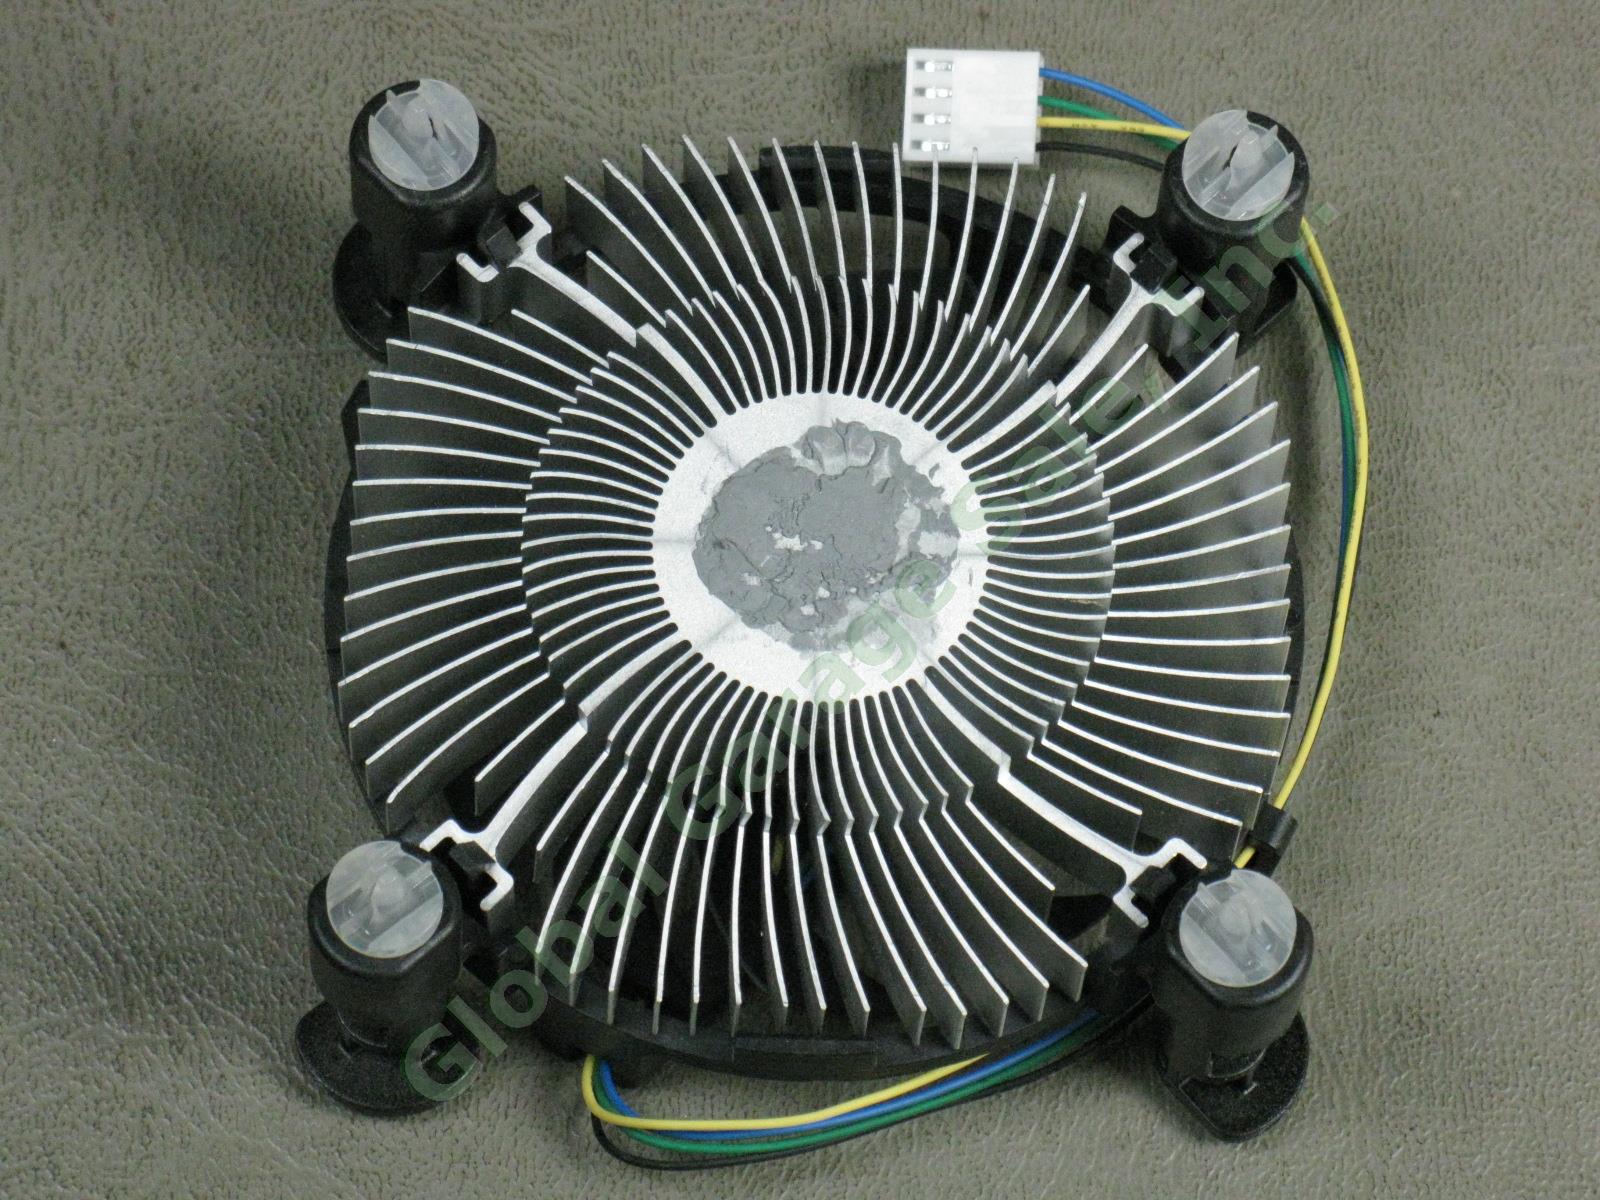 25 NEW Intel E98290-001 LGA1155 Heatsink CPU Cooler Cooling Fans Lot Intel i3 NR 4